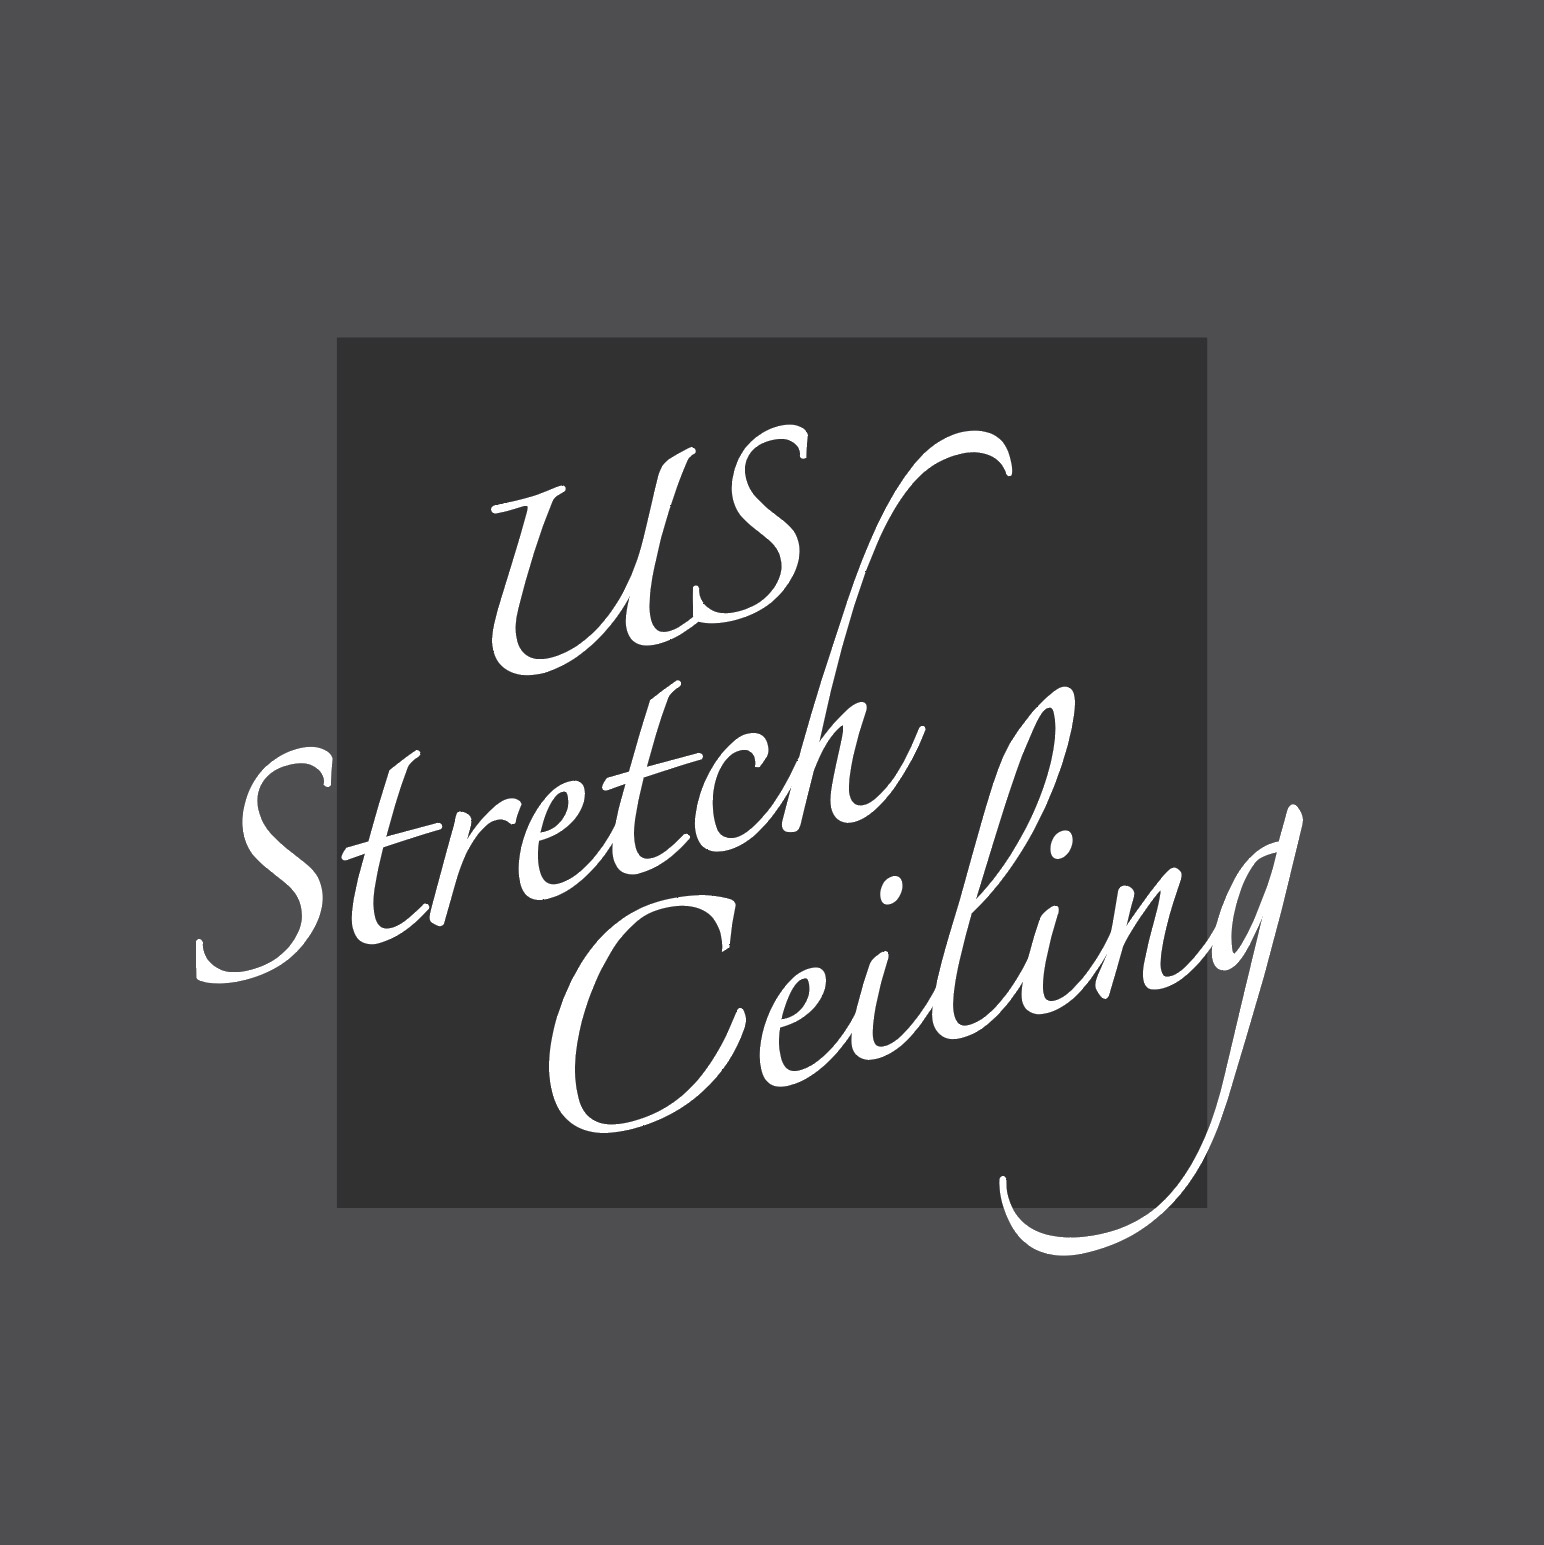 US Stretch Ceiling Logo